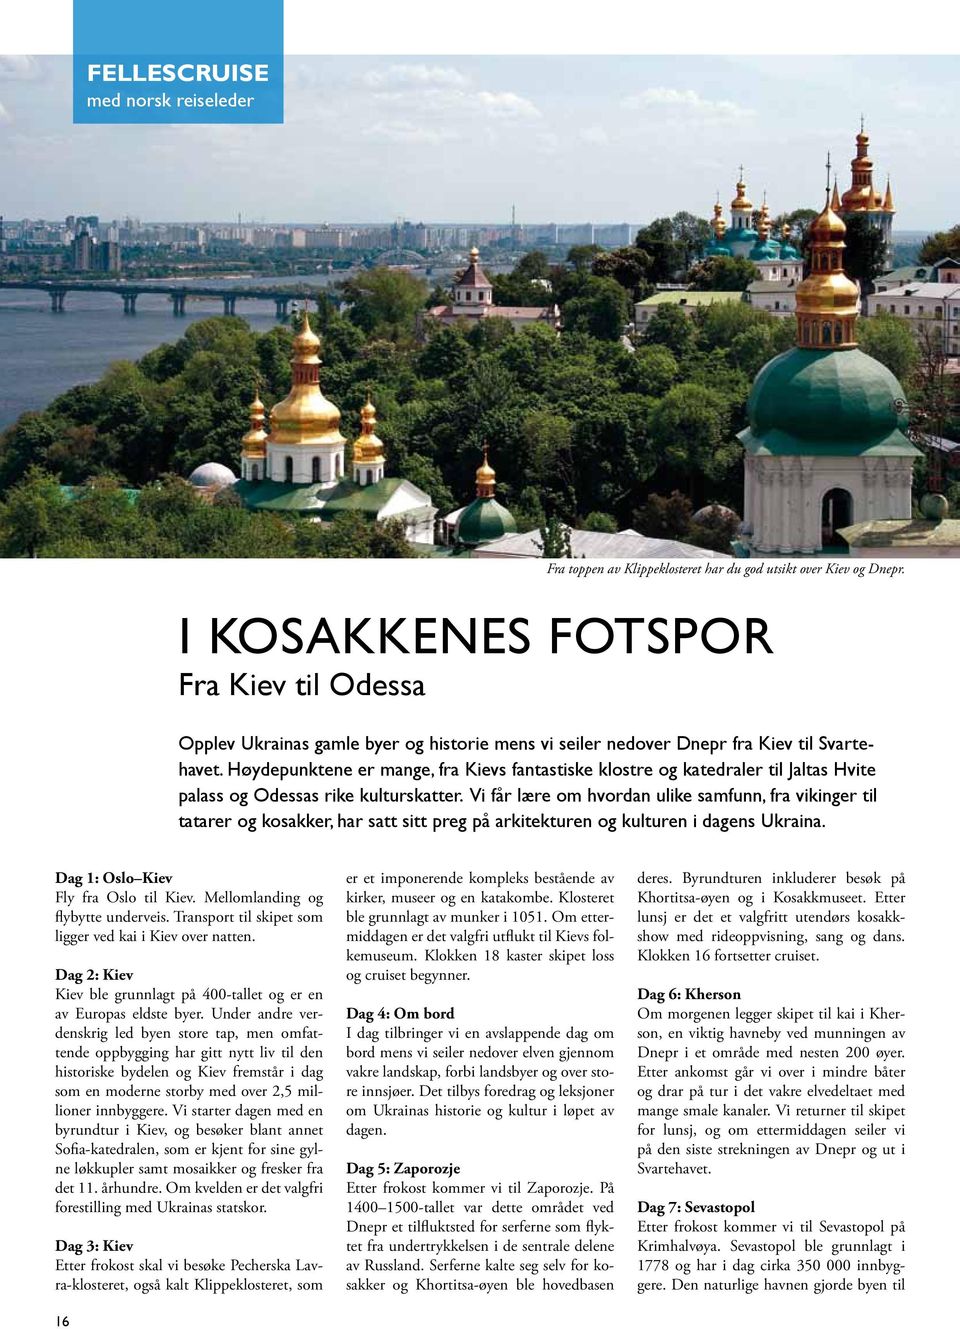 Høydepunktene er mange, fra Kievs fantastiske klostre og katedraler til Jaltas Hvite palass og Odessas rike kulturskatter.